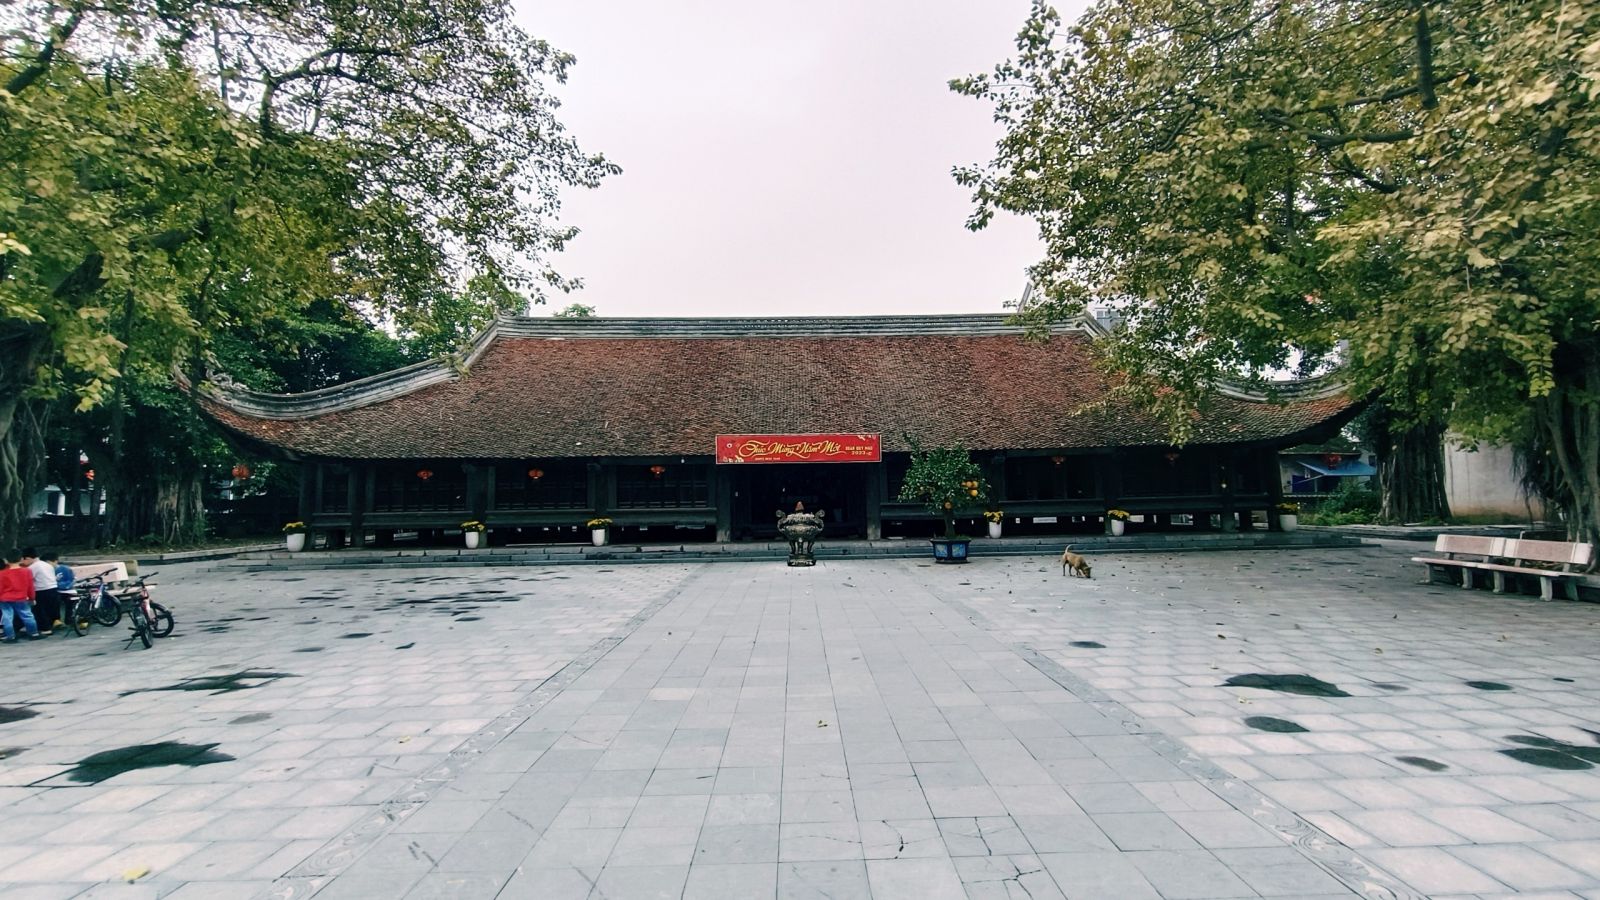 Đình Bảng - một trong những ngôi đình đẹp nhất vùng Kinh Bắc